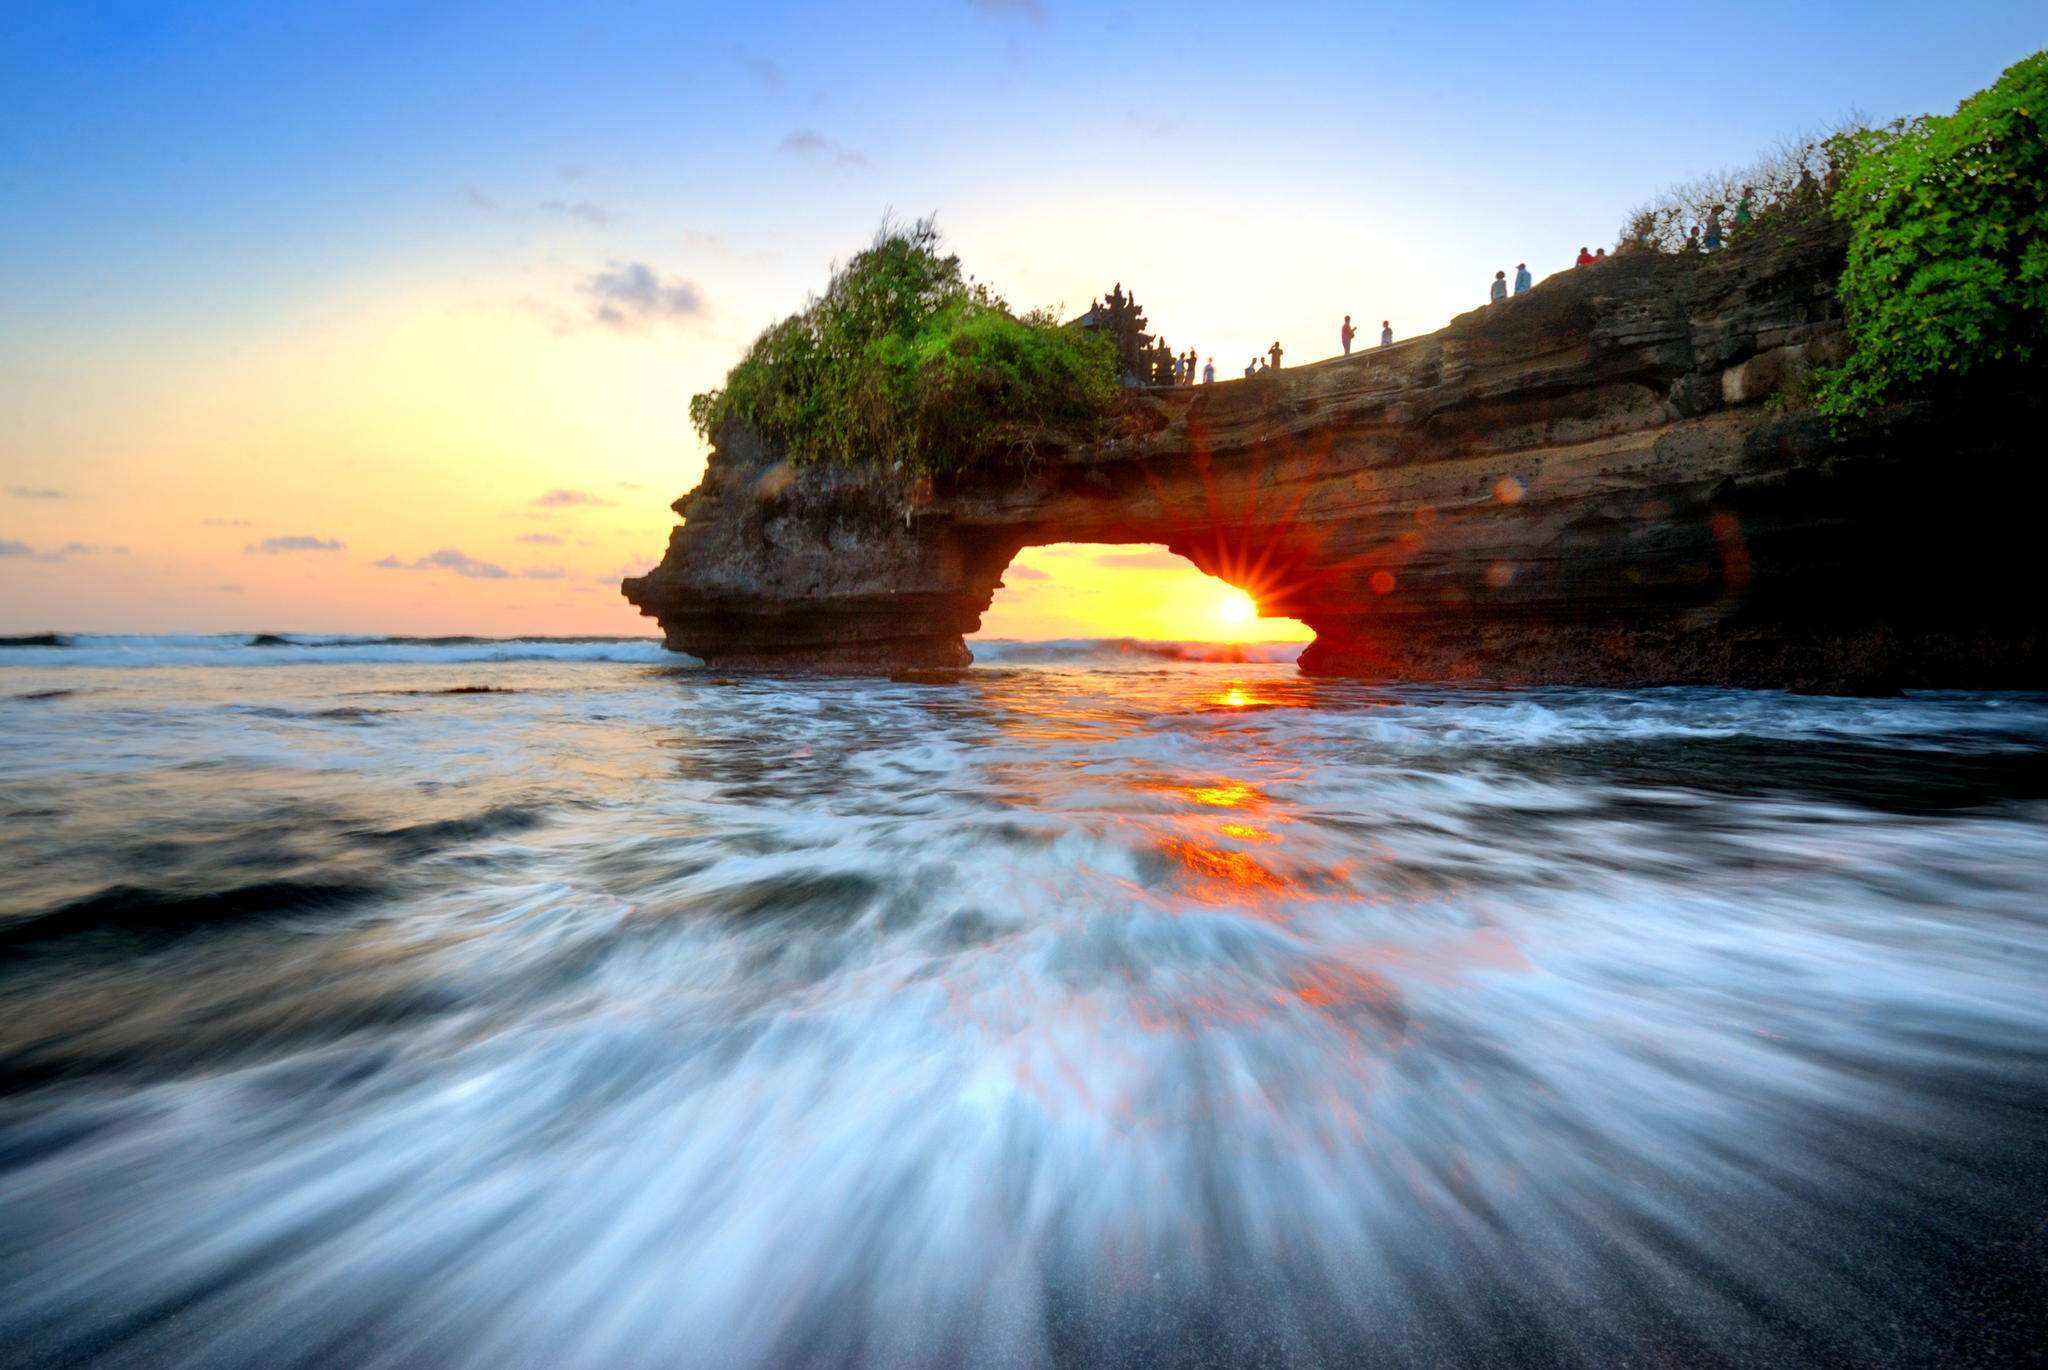 日落 巴厘岛 海滩 - Pixabay上的免费照片 - Pixabay